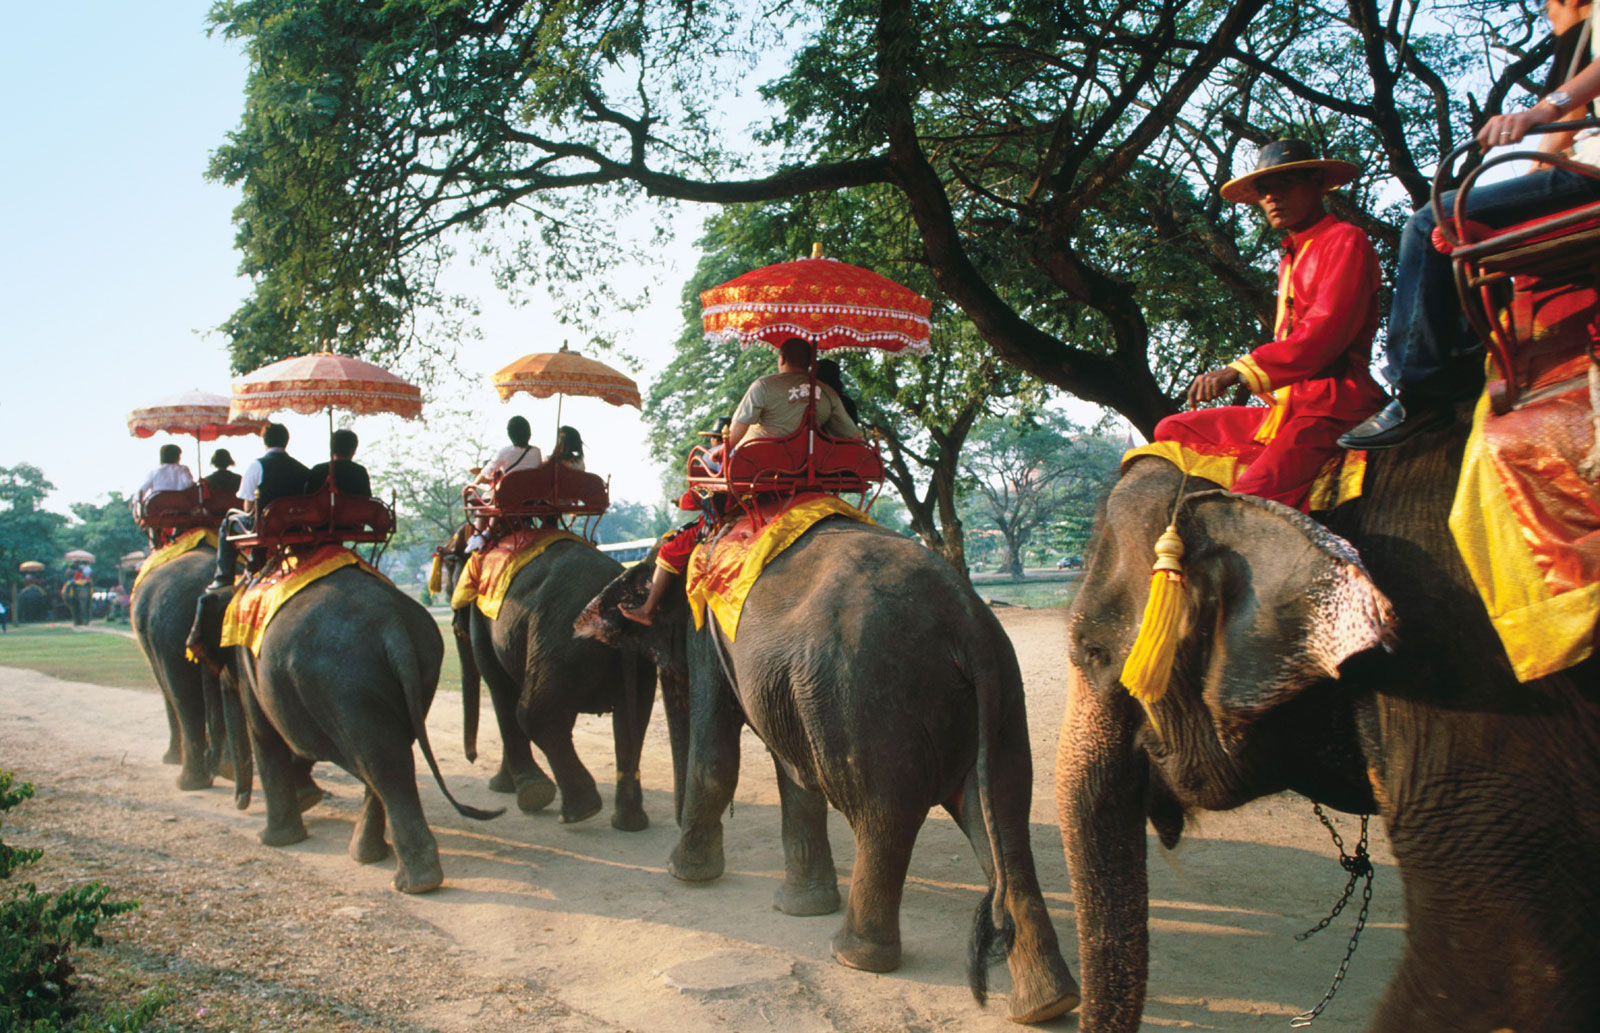 Elephant caravan at Ayutthaya, Thailand.